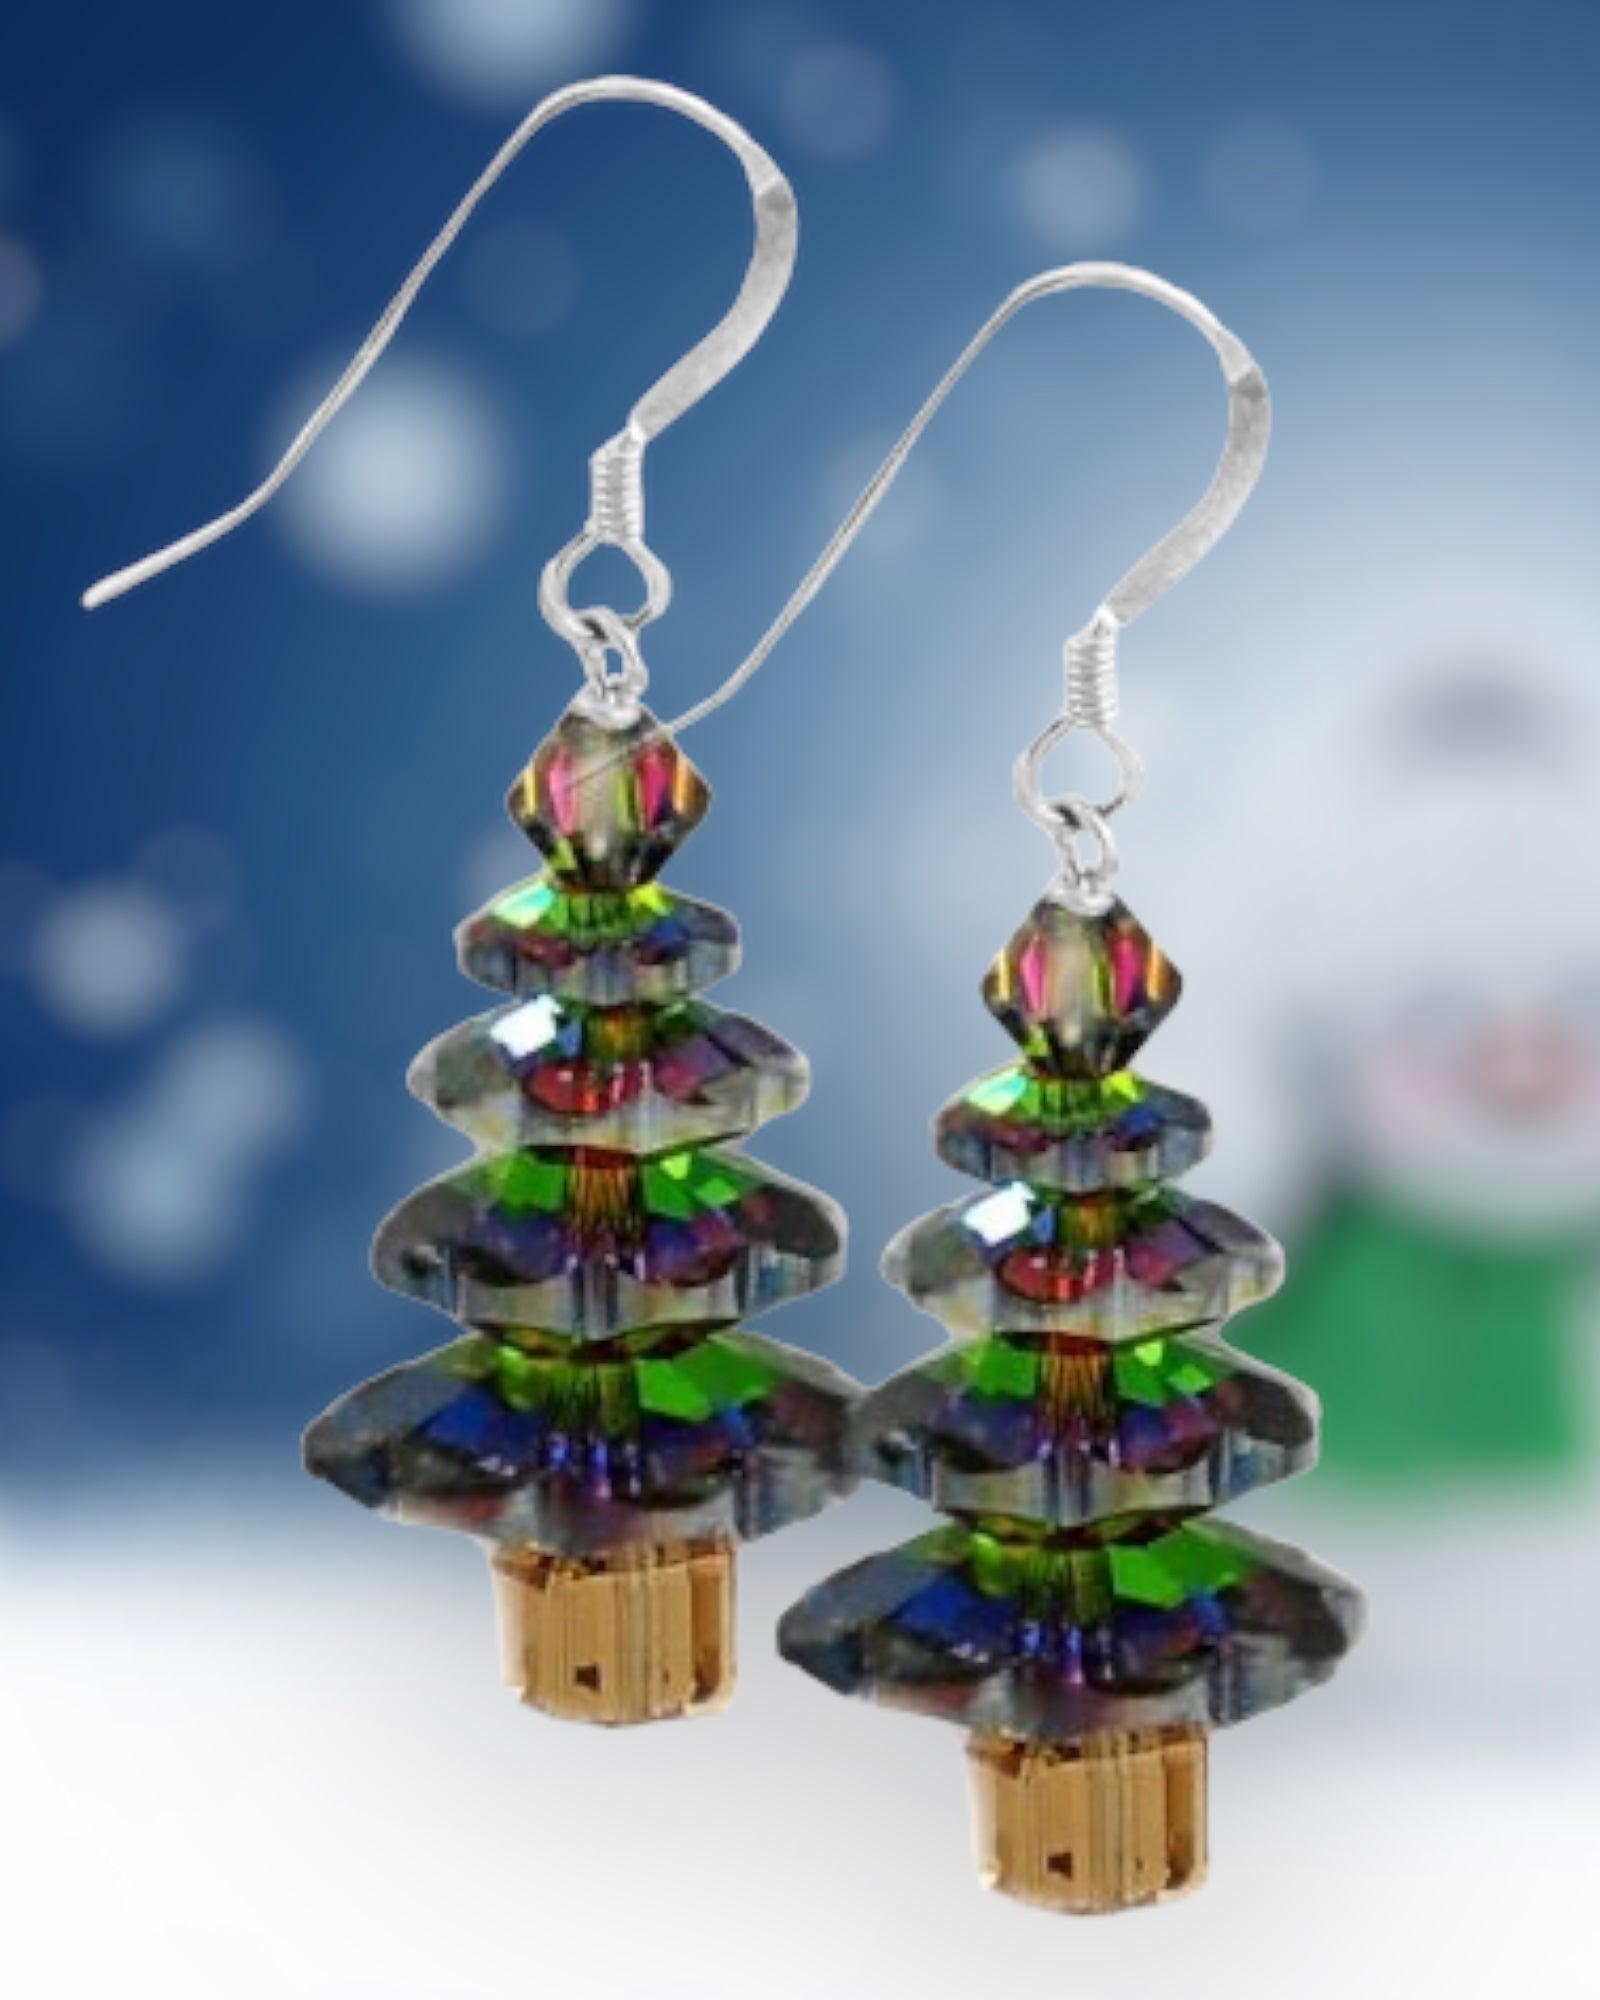 Swarovski Crystal Vitrail Medium Christmas Tree Earring Kit